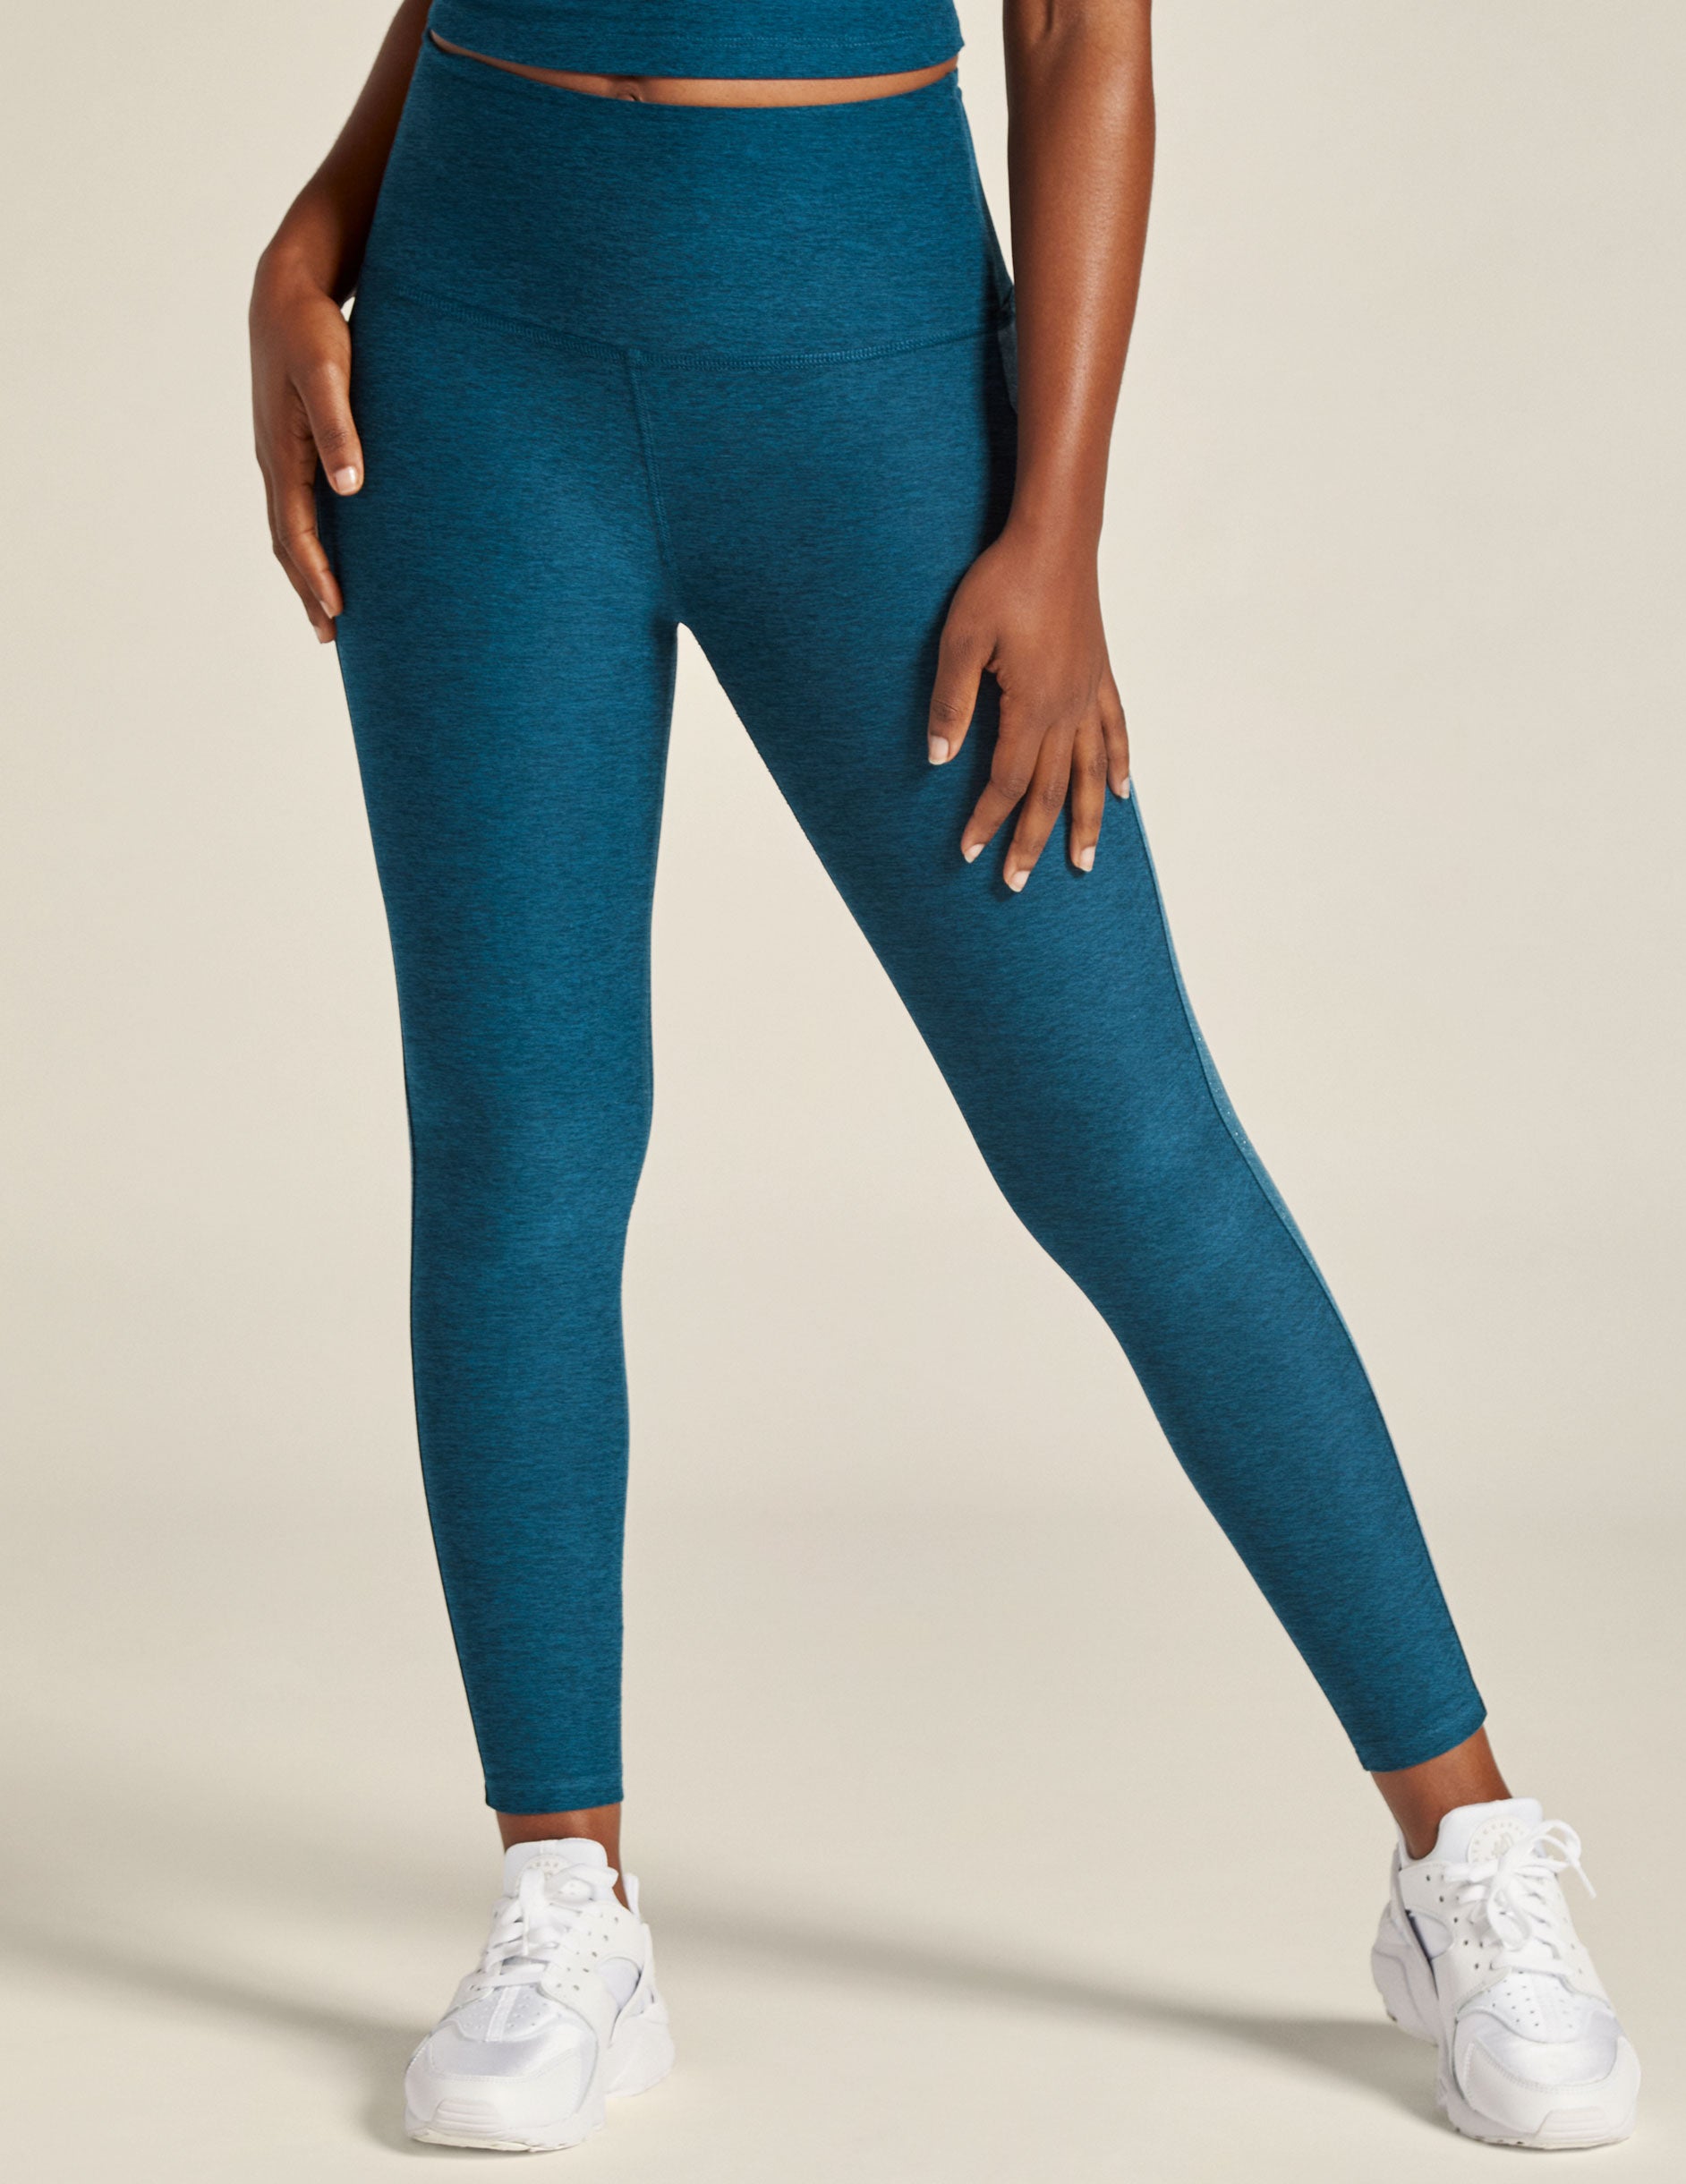 Size 8 - Lululemon Align Shorts – Your Next Gem